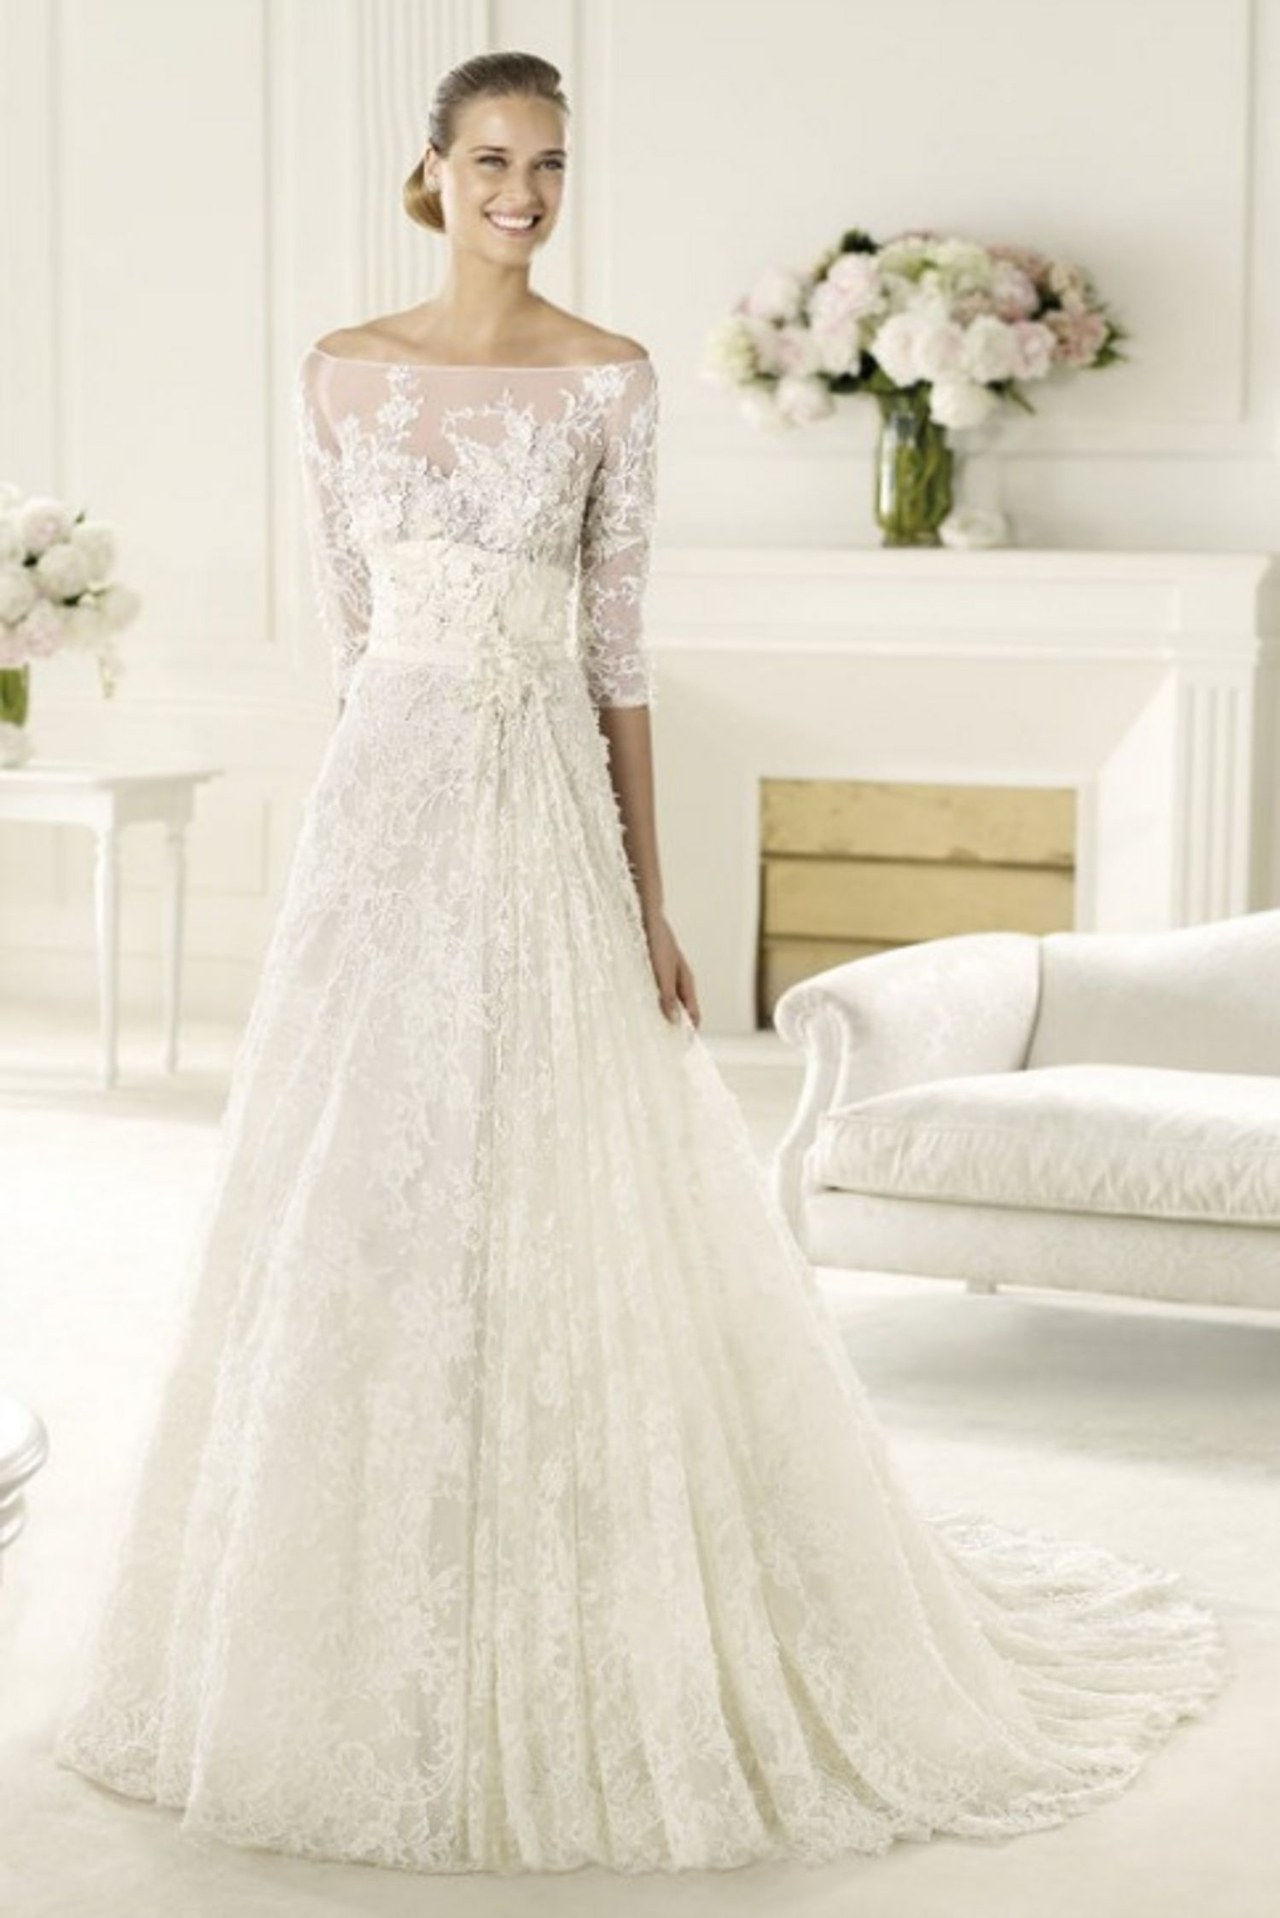 6 elizabeth taylor first wedding dresses inspired by wedding gowns conrad hilton celebrity weddings 0626